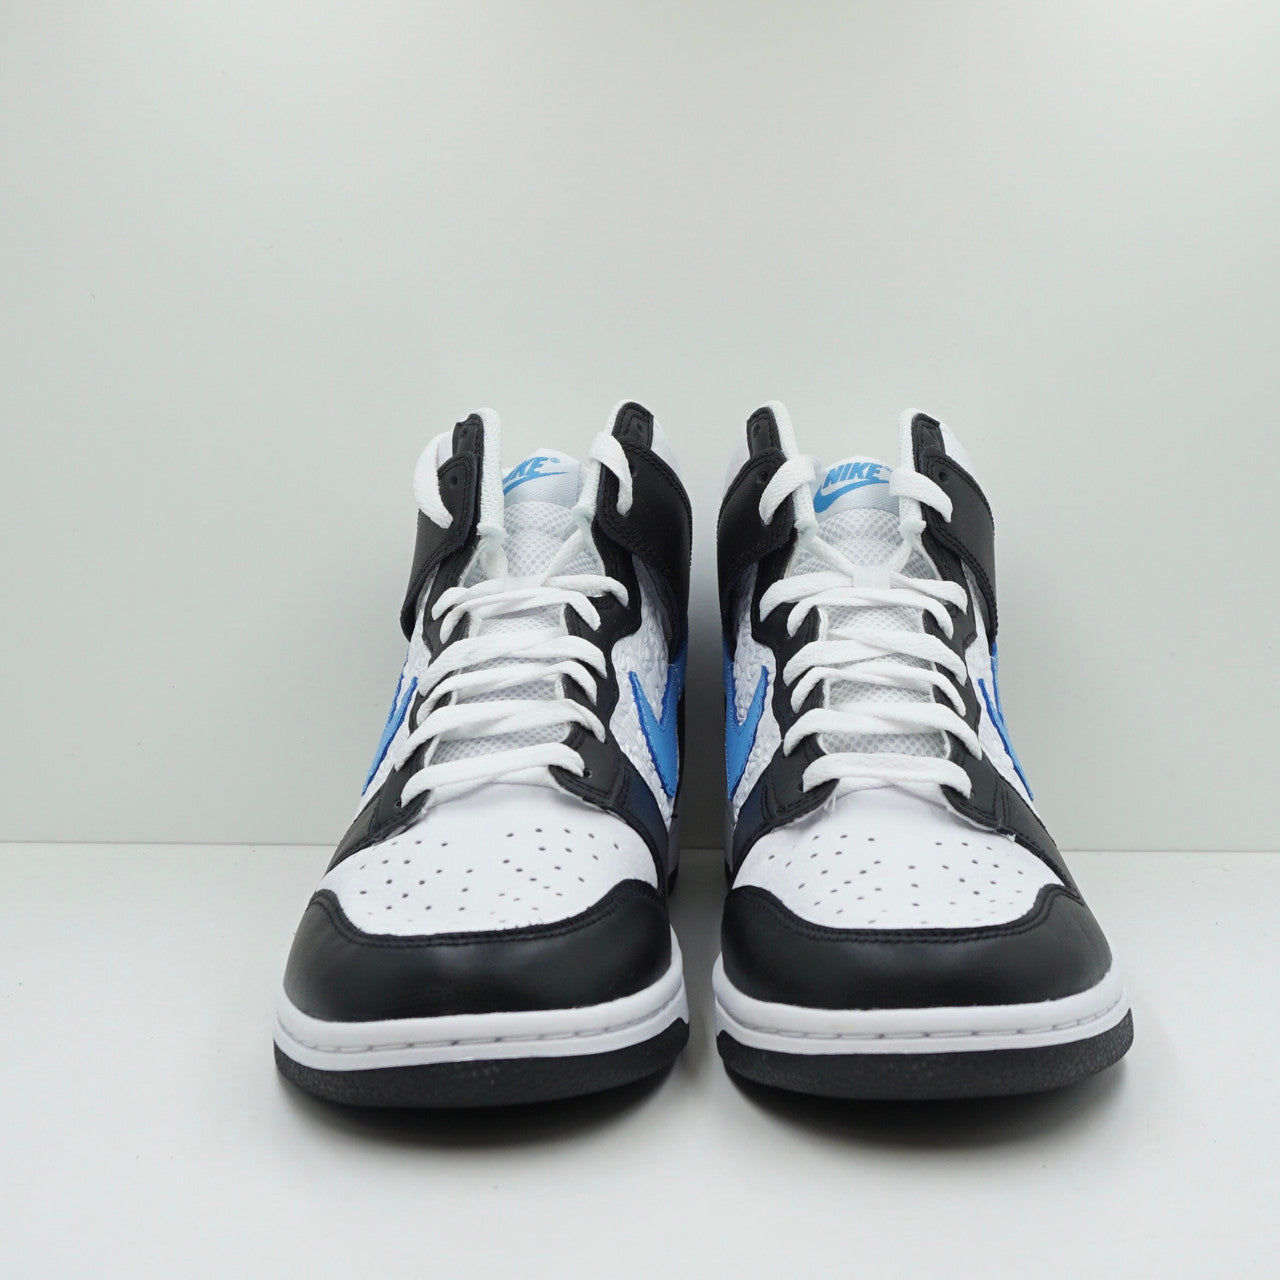 Nike Dunk High Retro FLC Black University Blue White